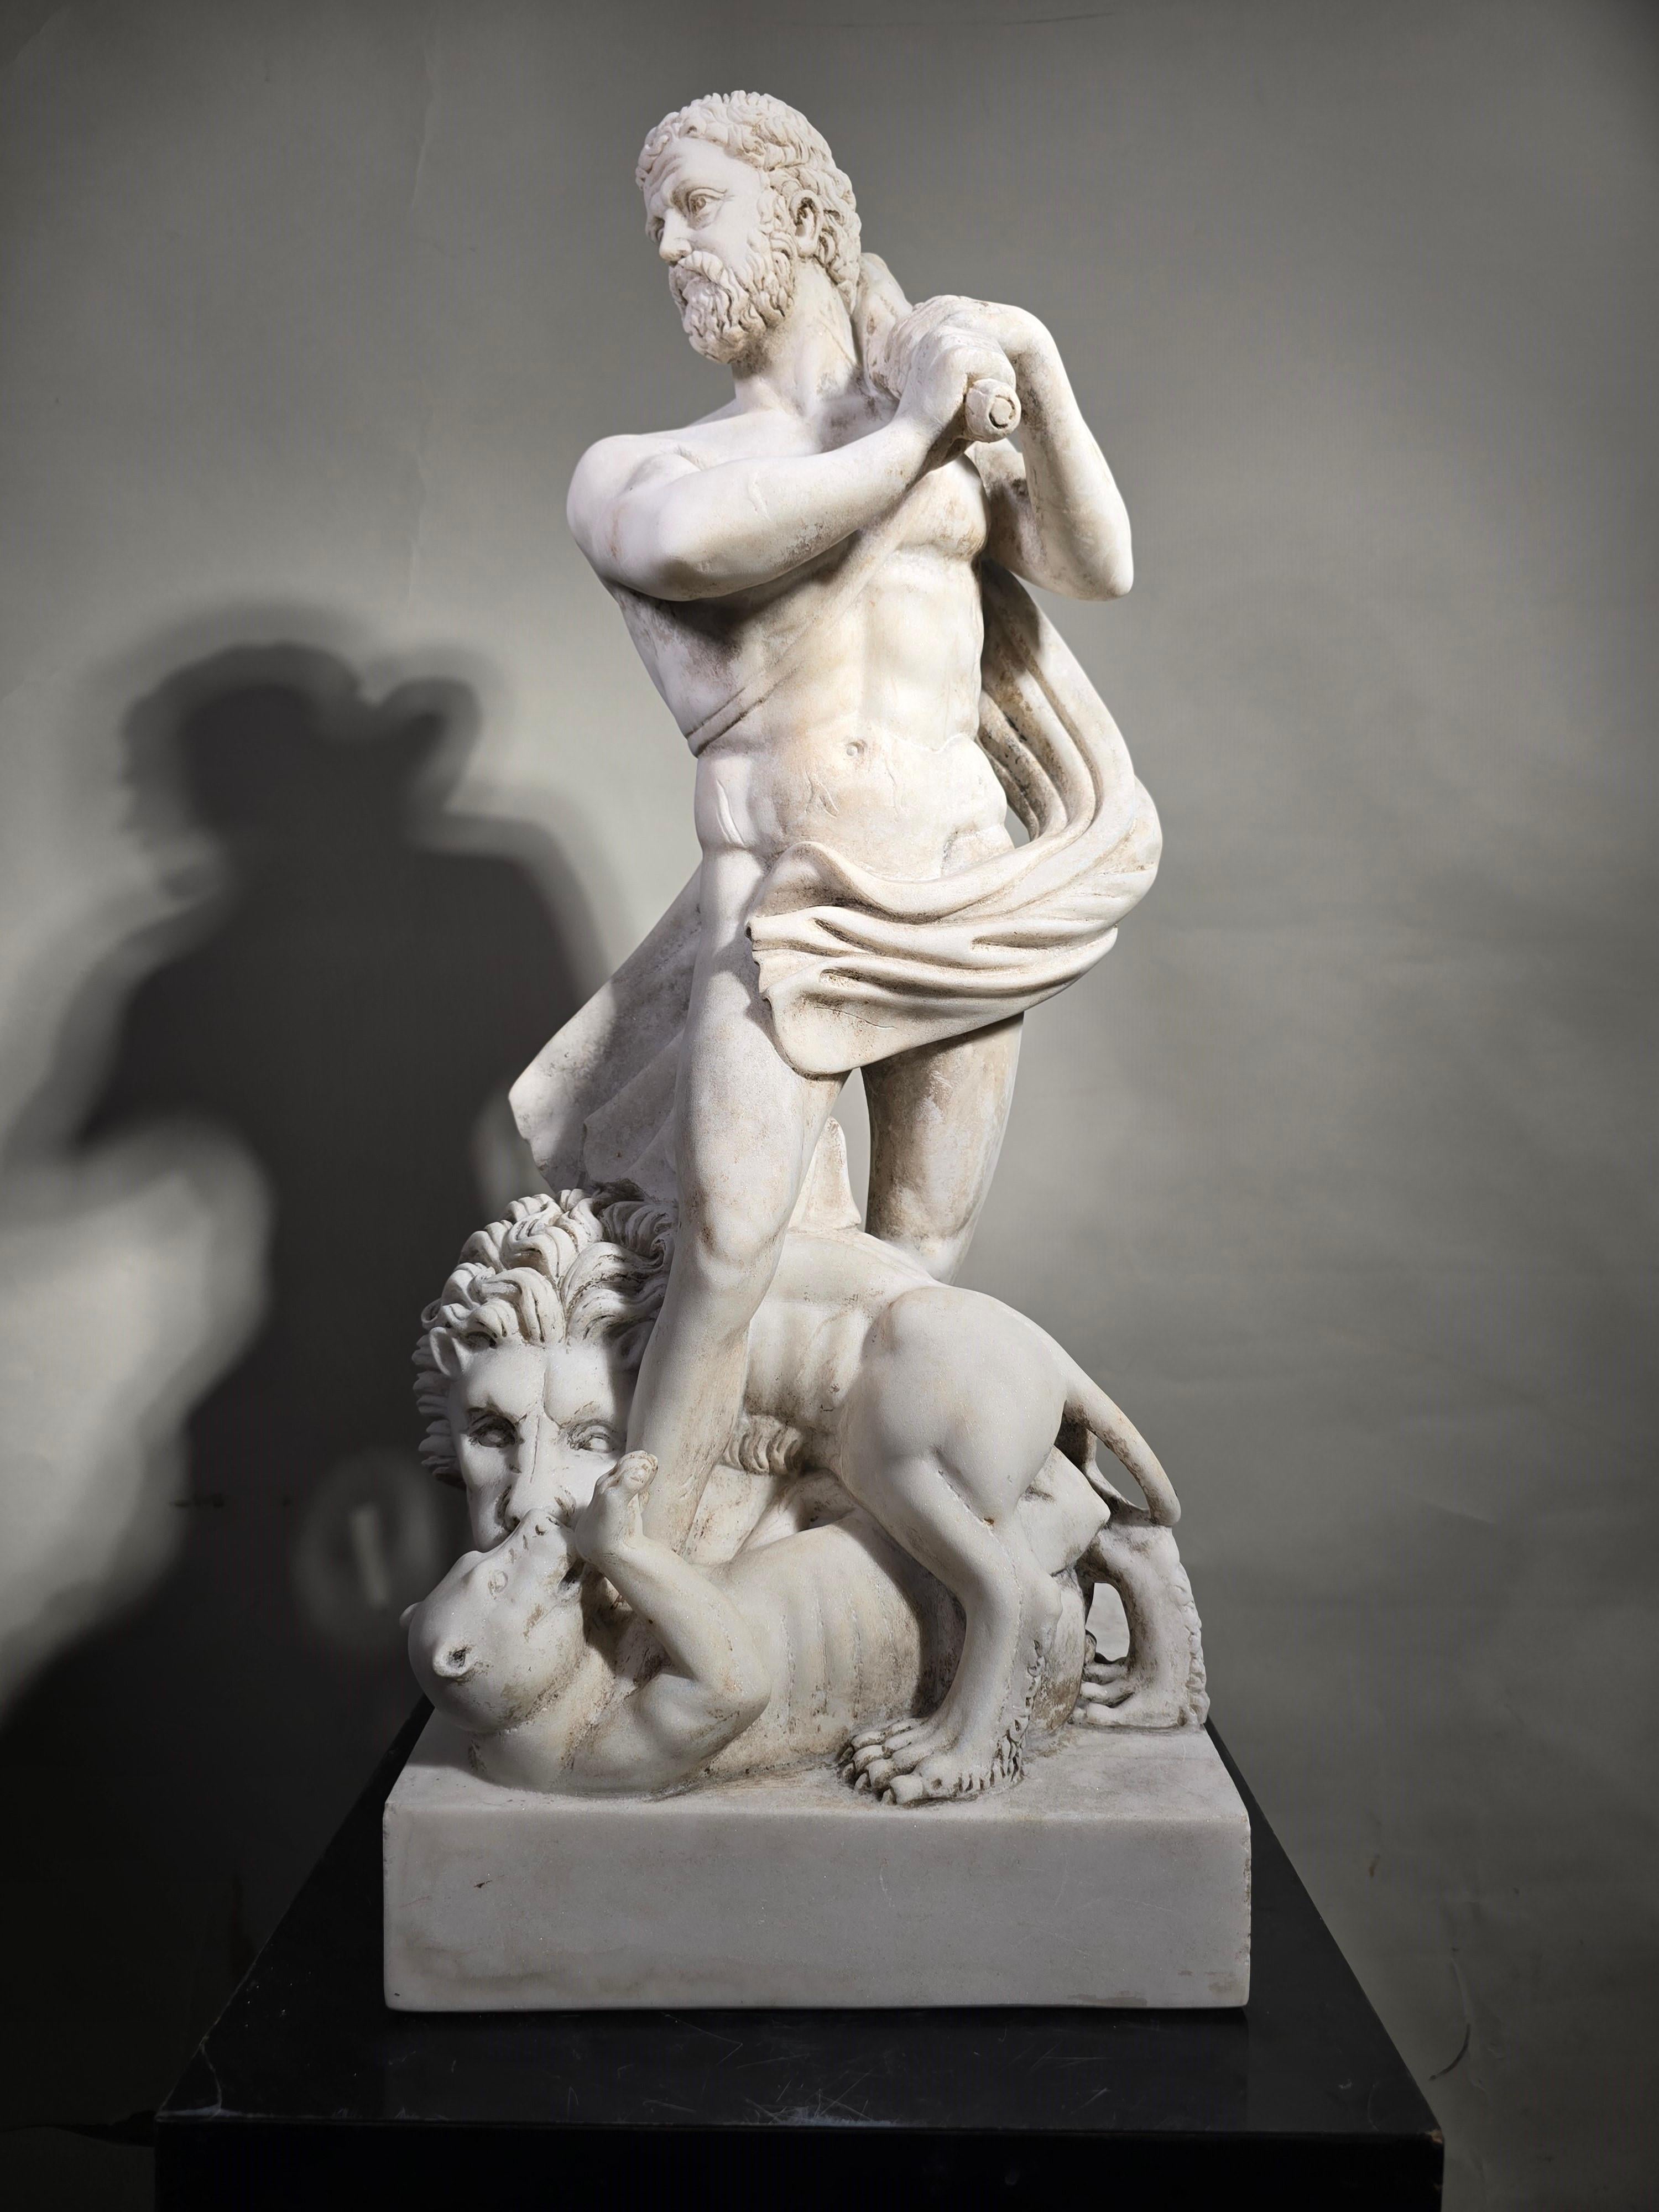 Diese majestätische Skulptur aus Carrara-Marmor, die die heroische Figur des Herkules darstellt, ist ein einzigartiges Kunstwerk des 19. Jahrhunderts. Jahrhundert. Mit zeitloser Eleganz und sorgfältiger Ausführung bietet dieses Stück eine